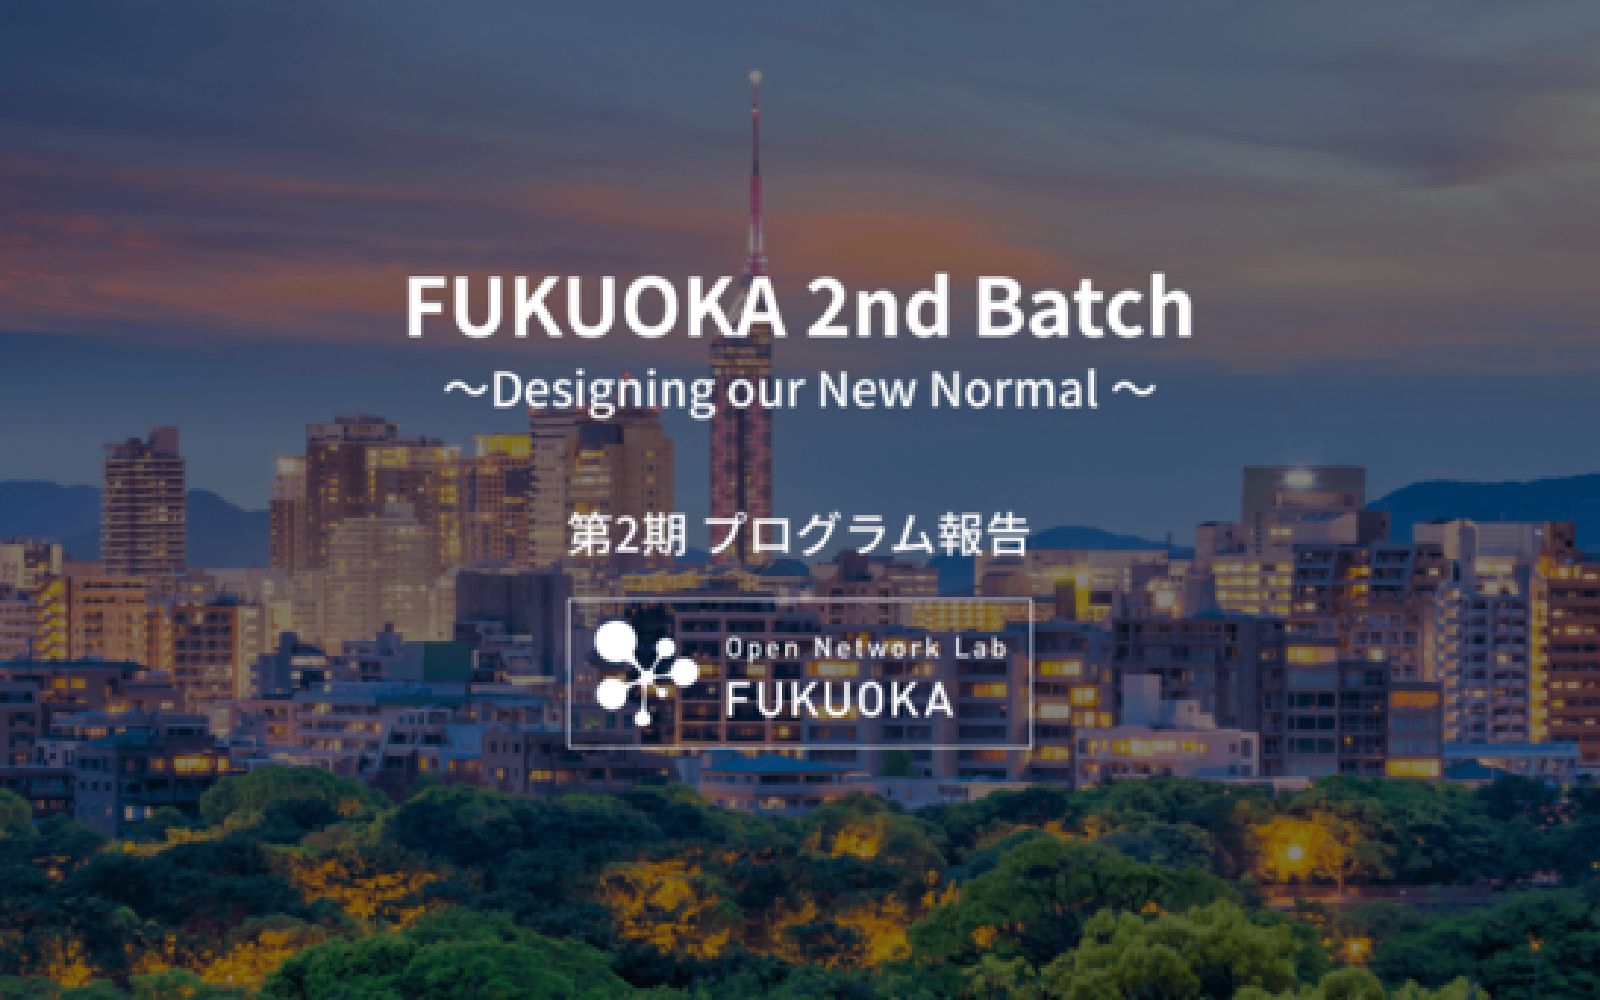 デジタルガレージ等主催のOpen Network Lab FUKUOKA 第2期に採択